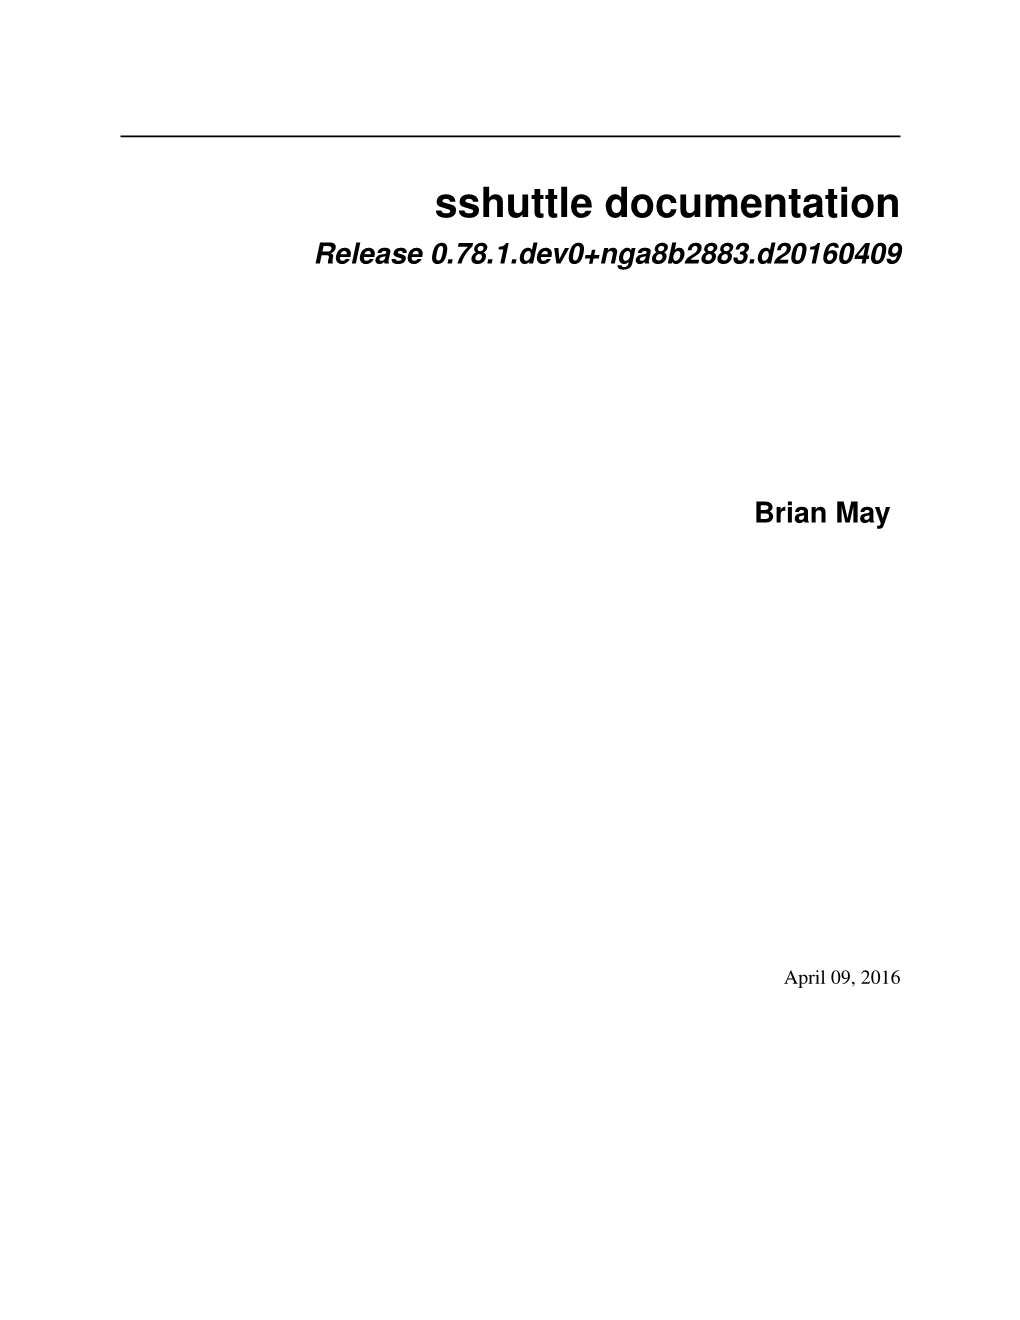 Sshuttle Documentation Release 0.78.1.Dev0+Nga8b2883.D20160409